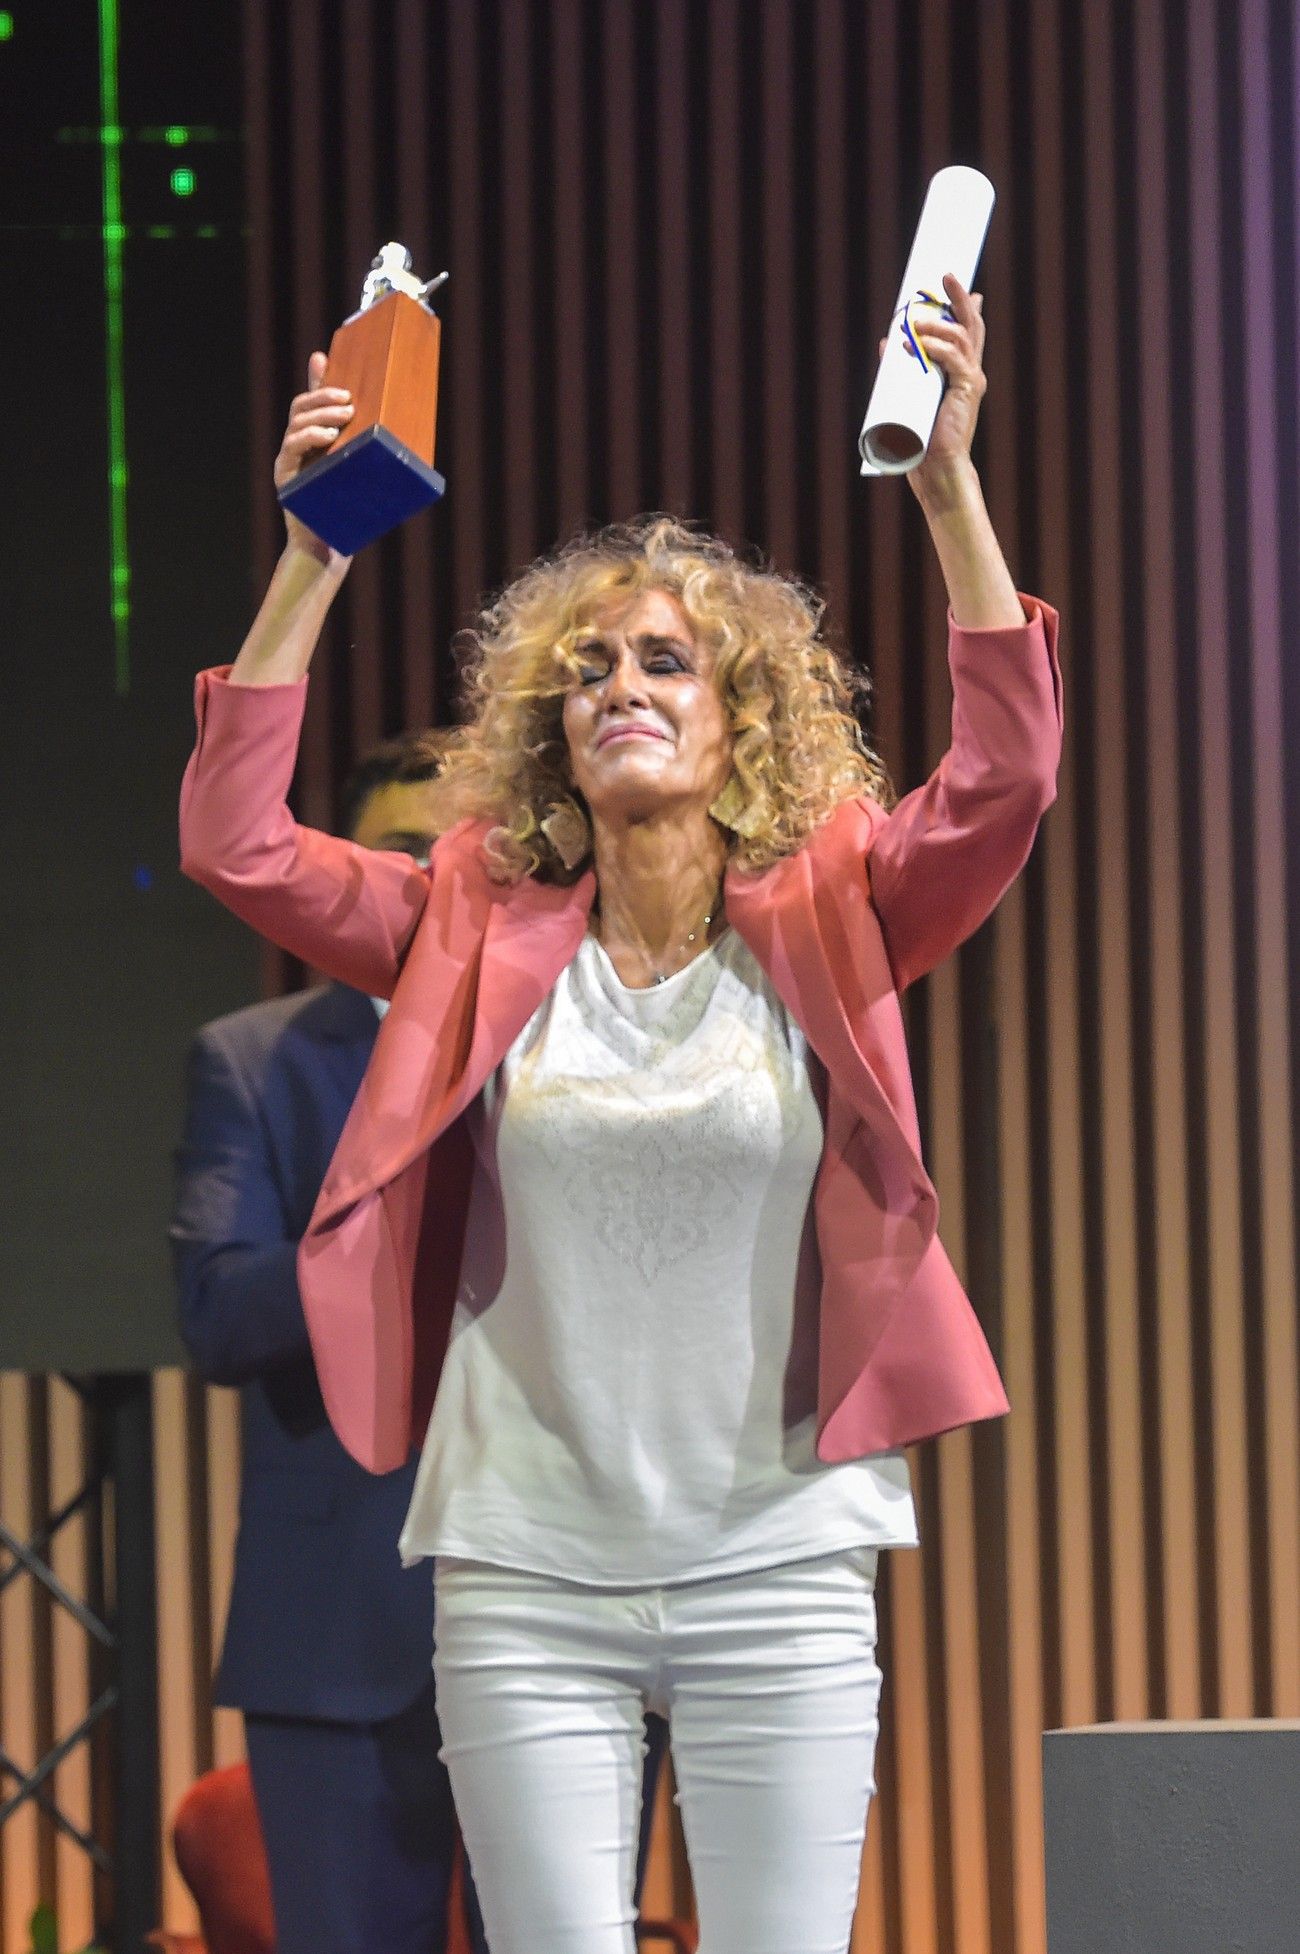 Entrega de Honores y Distinciones del Cabildo de Gran Canaria 2022